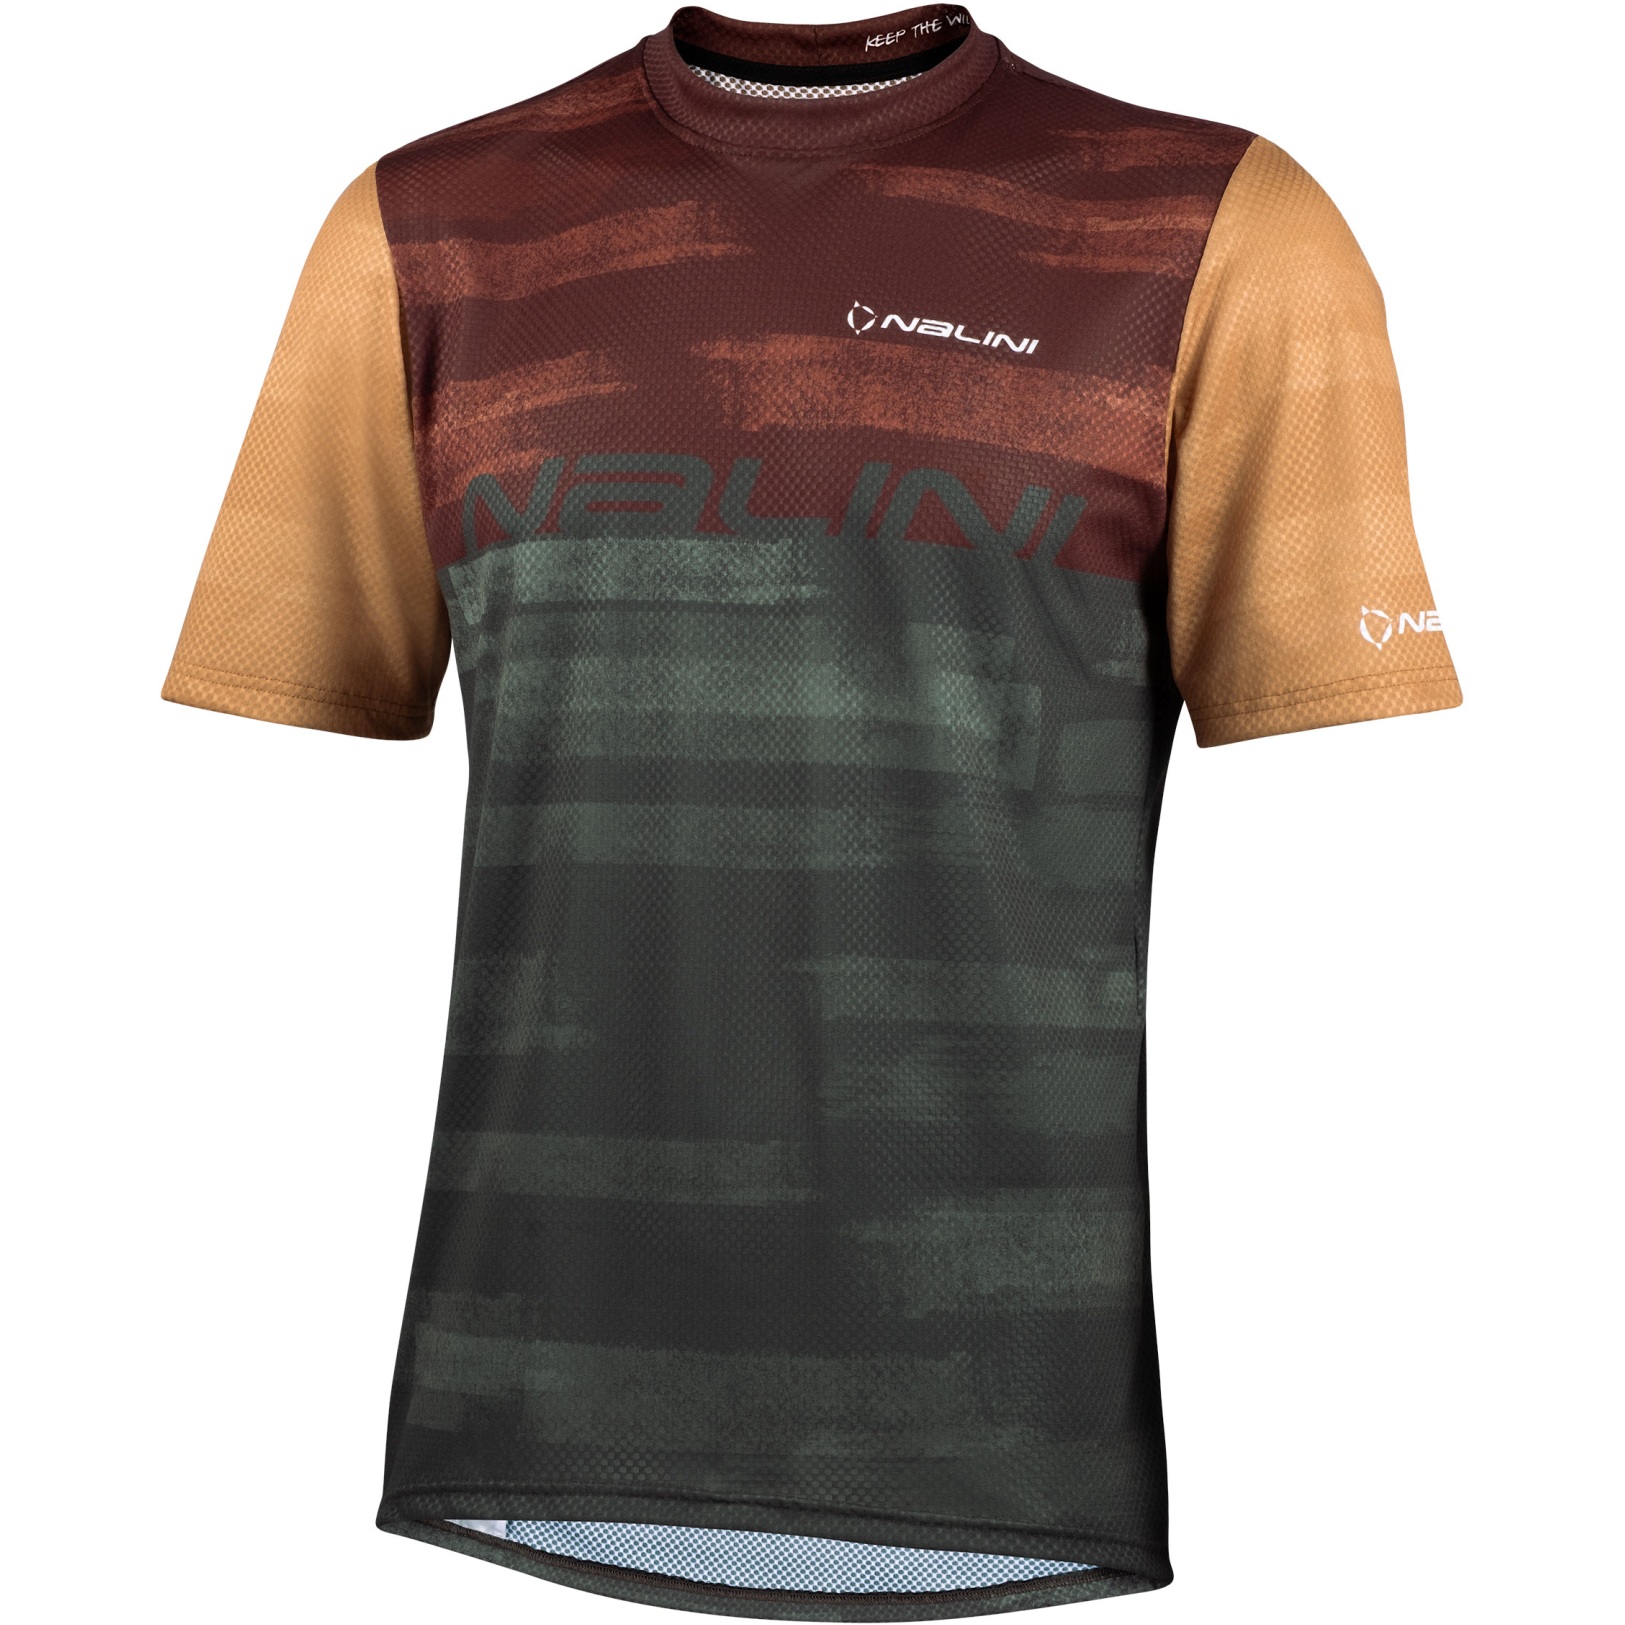 Produktbild von Nalini New MTB Shirt Men - brown wood 4500